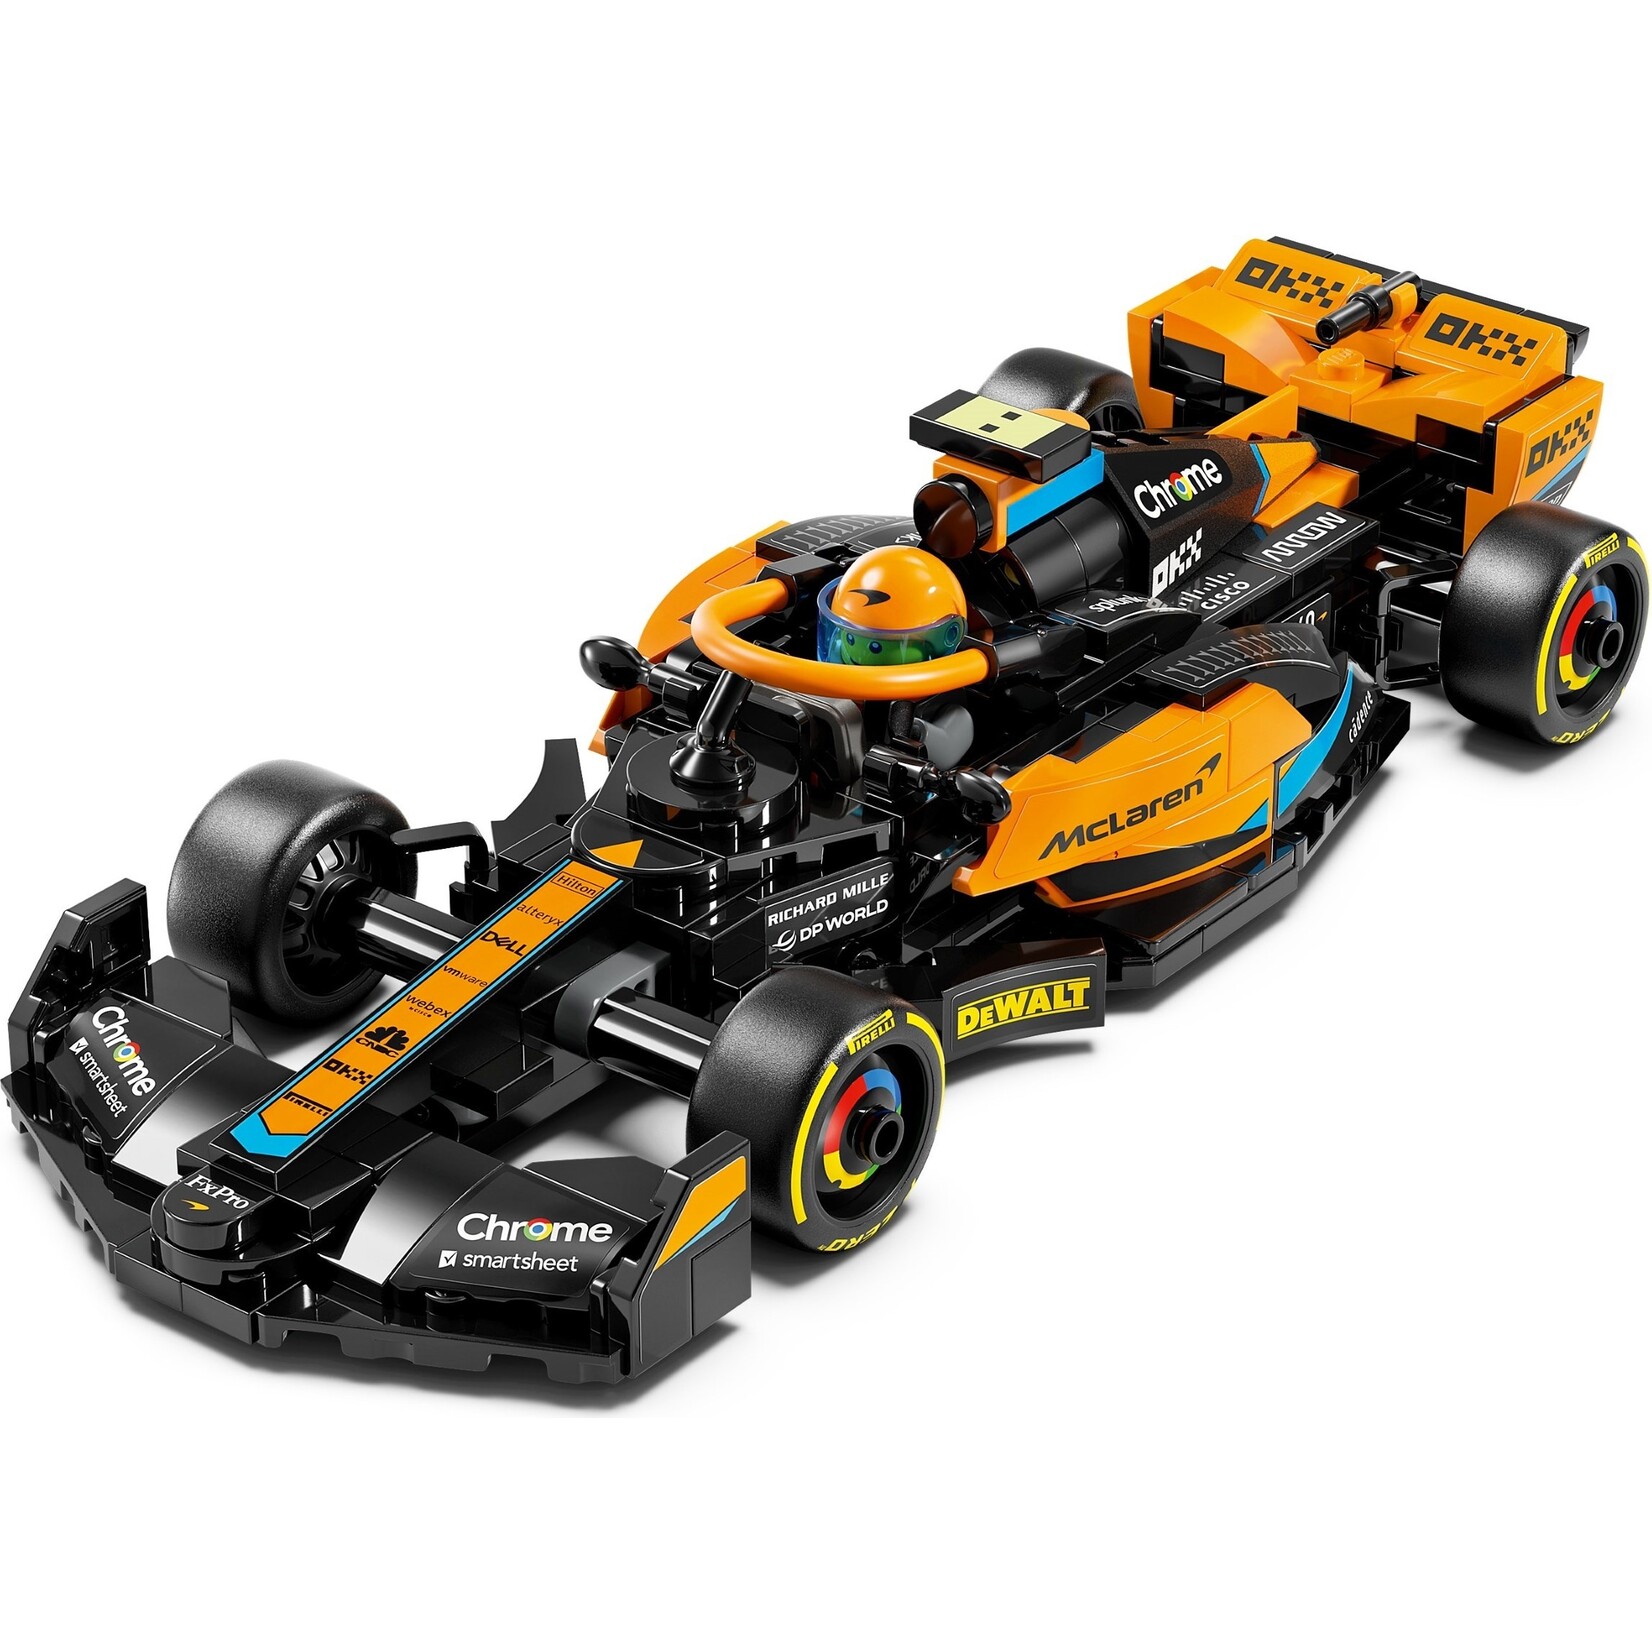 LEGO McLaren Formule 1 racewagen 2023 - 76919